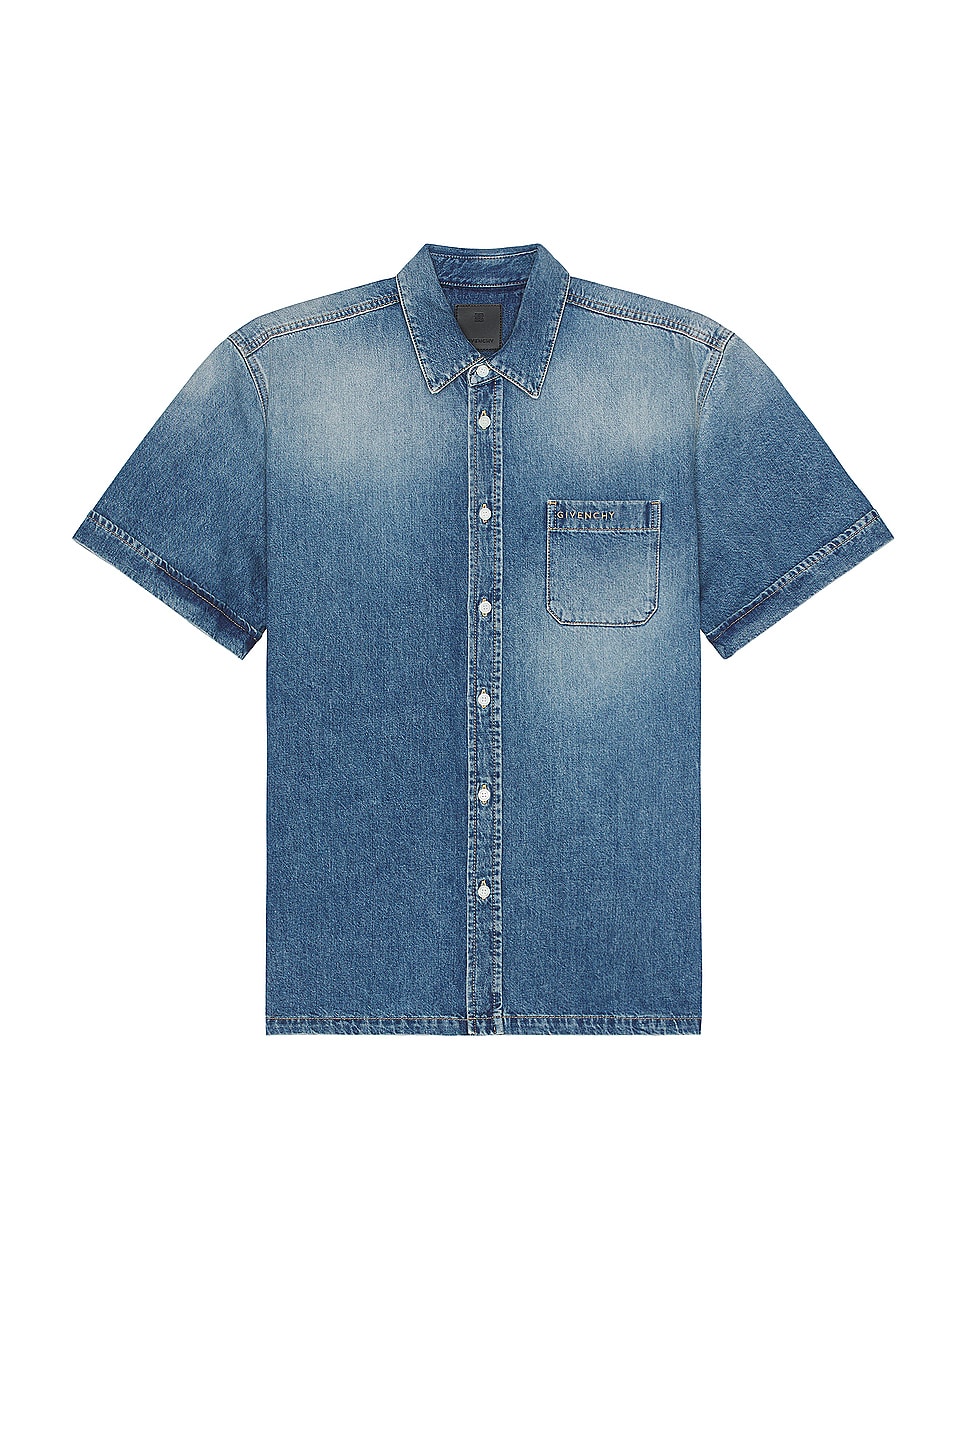 Image 1 of Givenchy Short Sleeve Shirt in Indigo Blue